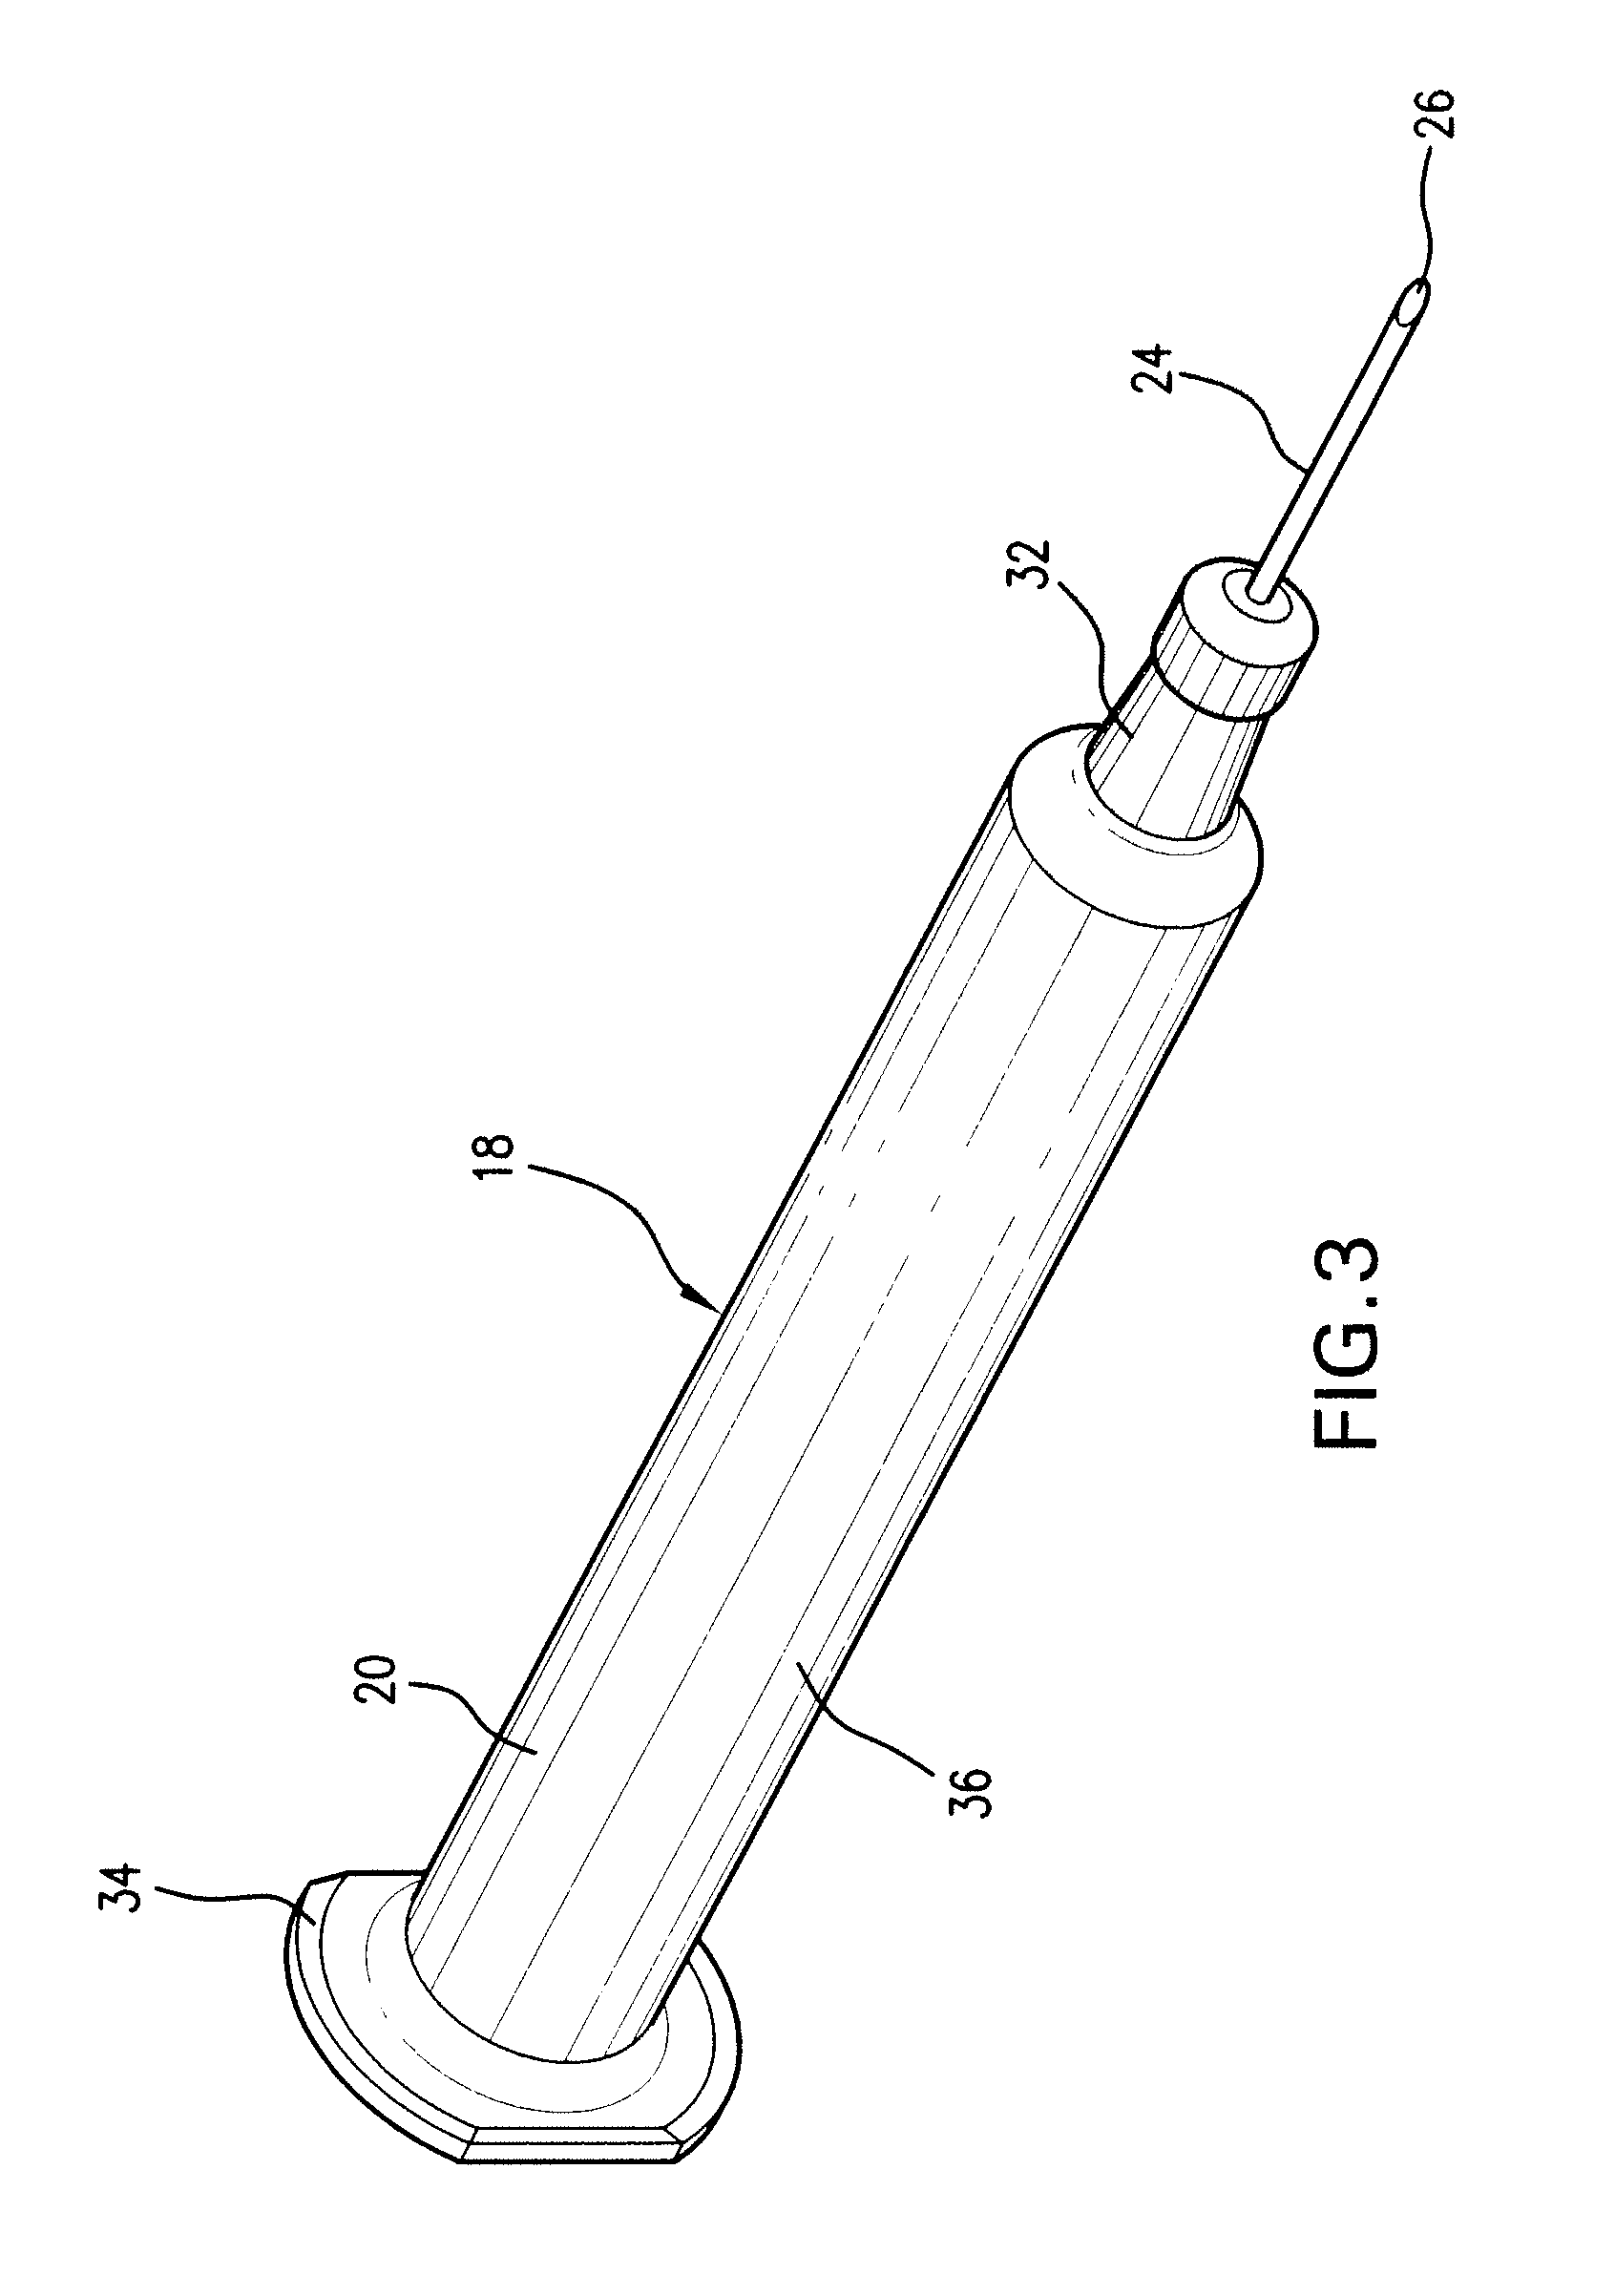 Prefilled syringe jet injector